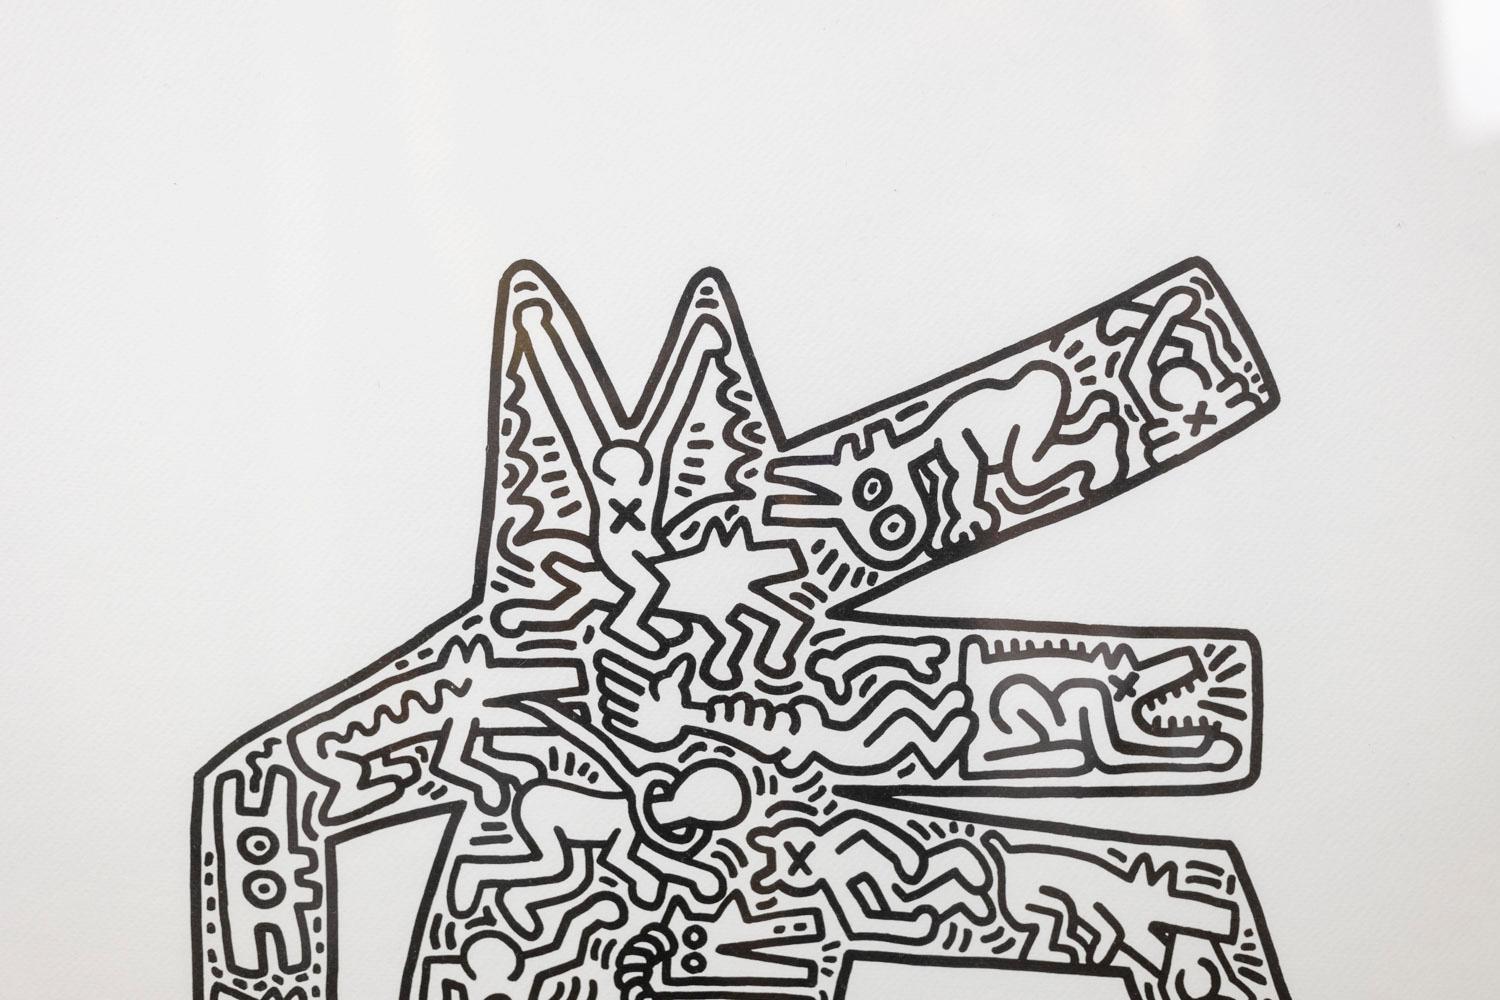 Keith Haring, signé et numéroté.

Sérigraphie abstraite, suggérant un personnage, dans les tons noir et blanc et dans son cadre en chêne blond.

Numéroté 56/150.

Œuvre américaine réalisée dans les années 1990.